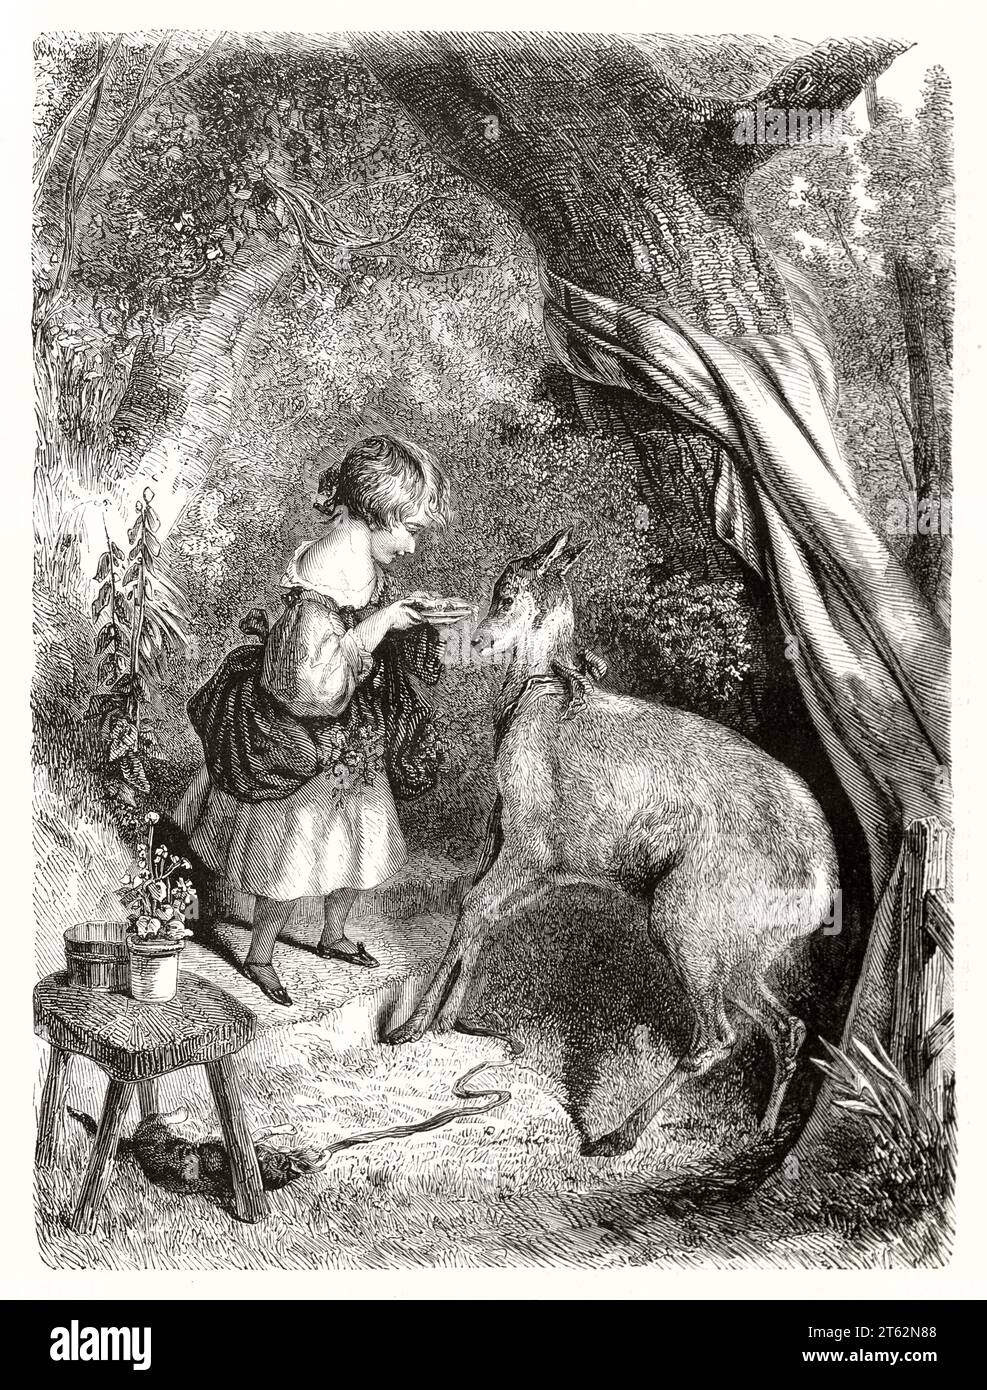 Vecchia illustrazione di una ragazza che dà da mangiare a un fazzoletto. Dopo Landseer, publ. Su Magasin Pittoresque, Parigi, 1849 Foto Stock